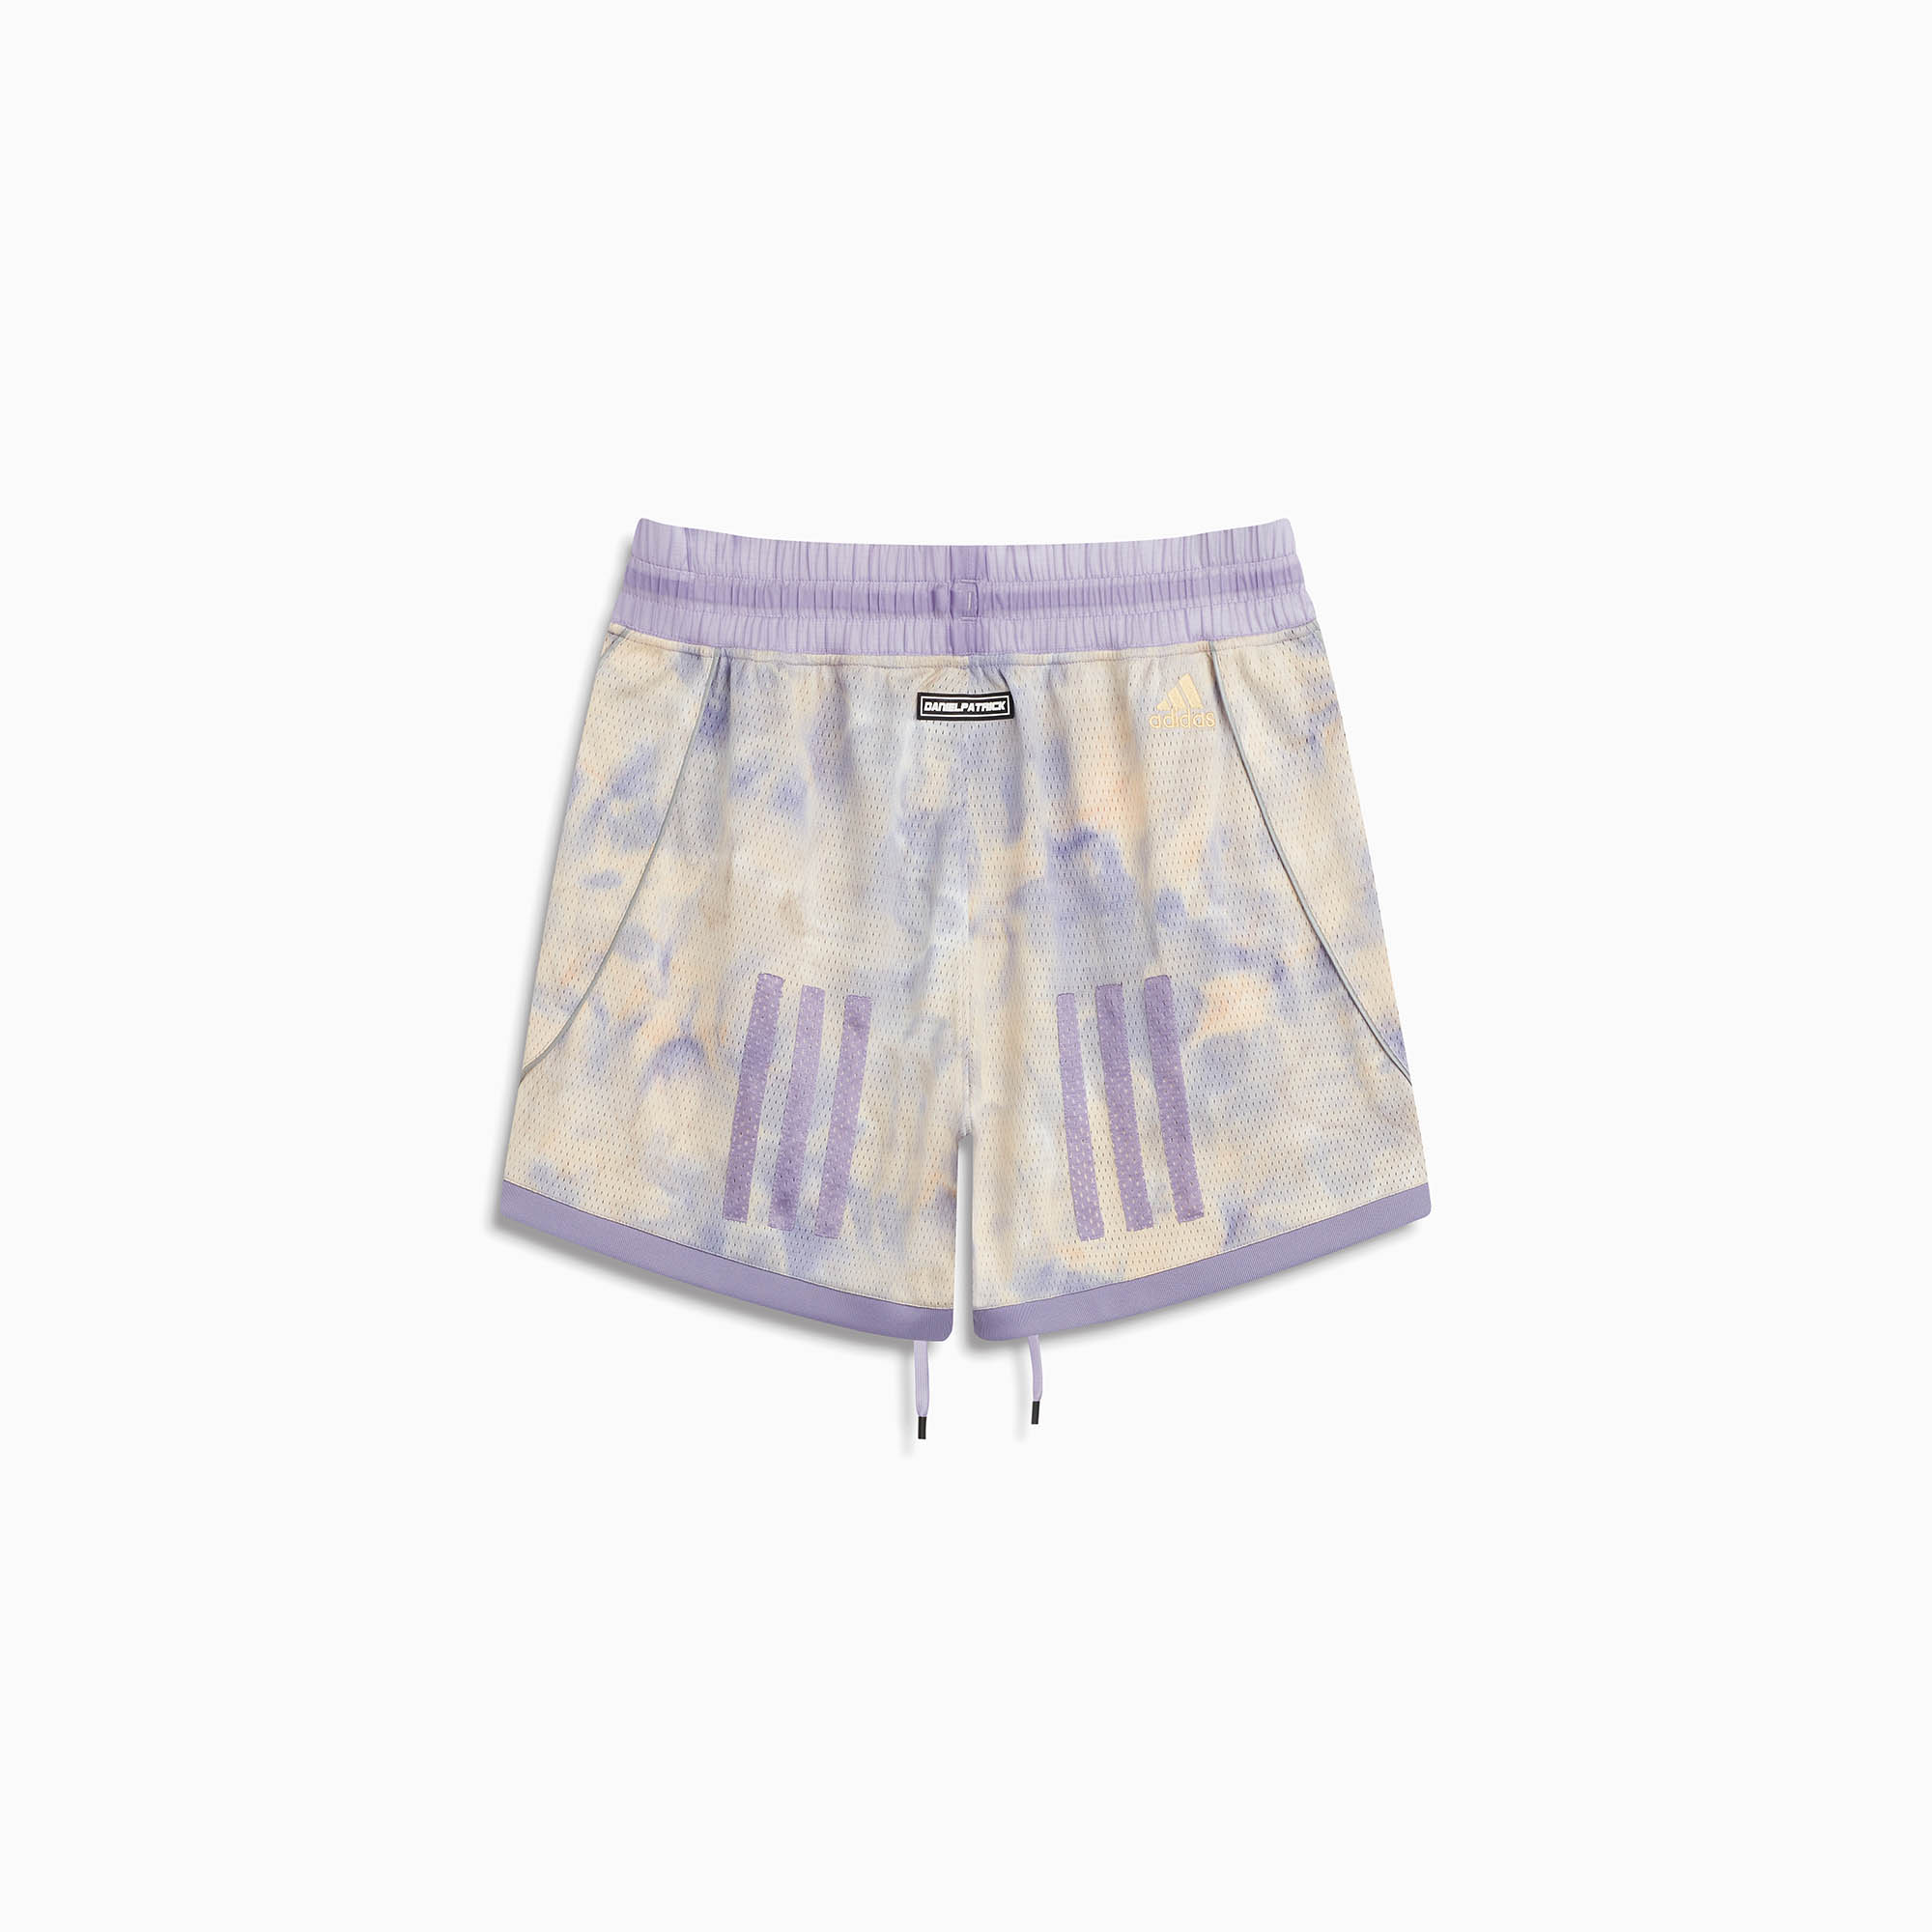 DP adidas Baseball shorts / pulse amber + magic lilac